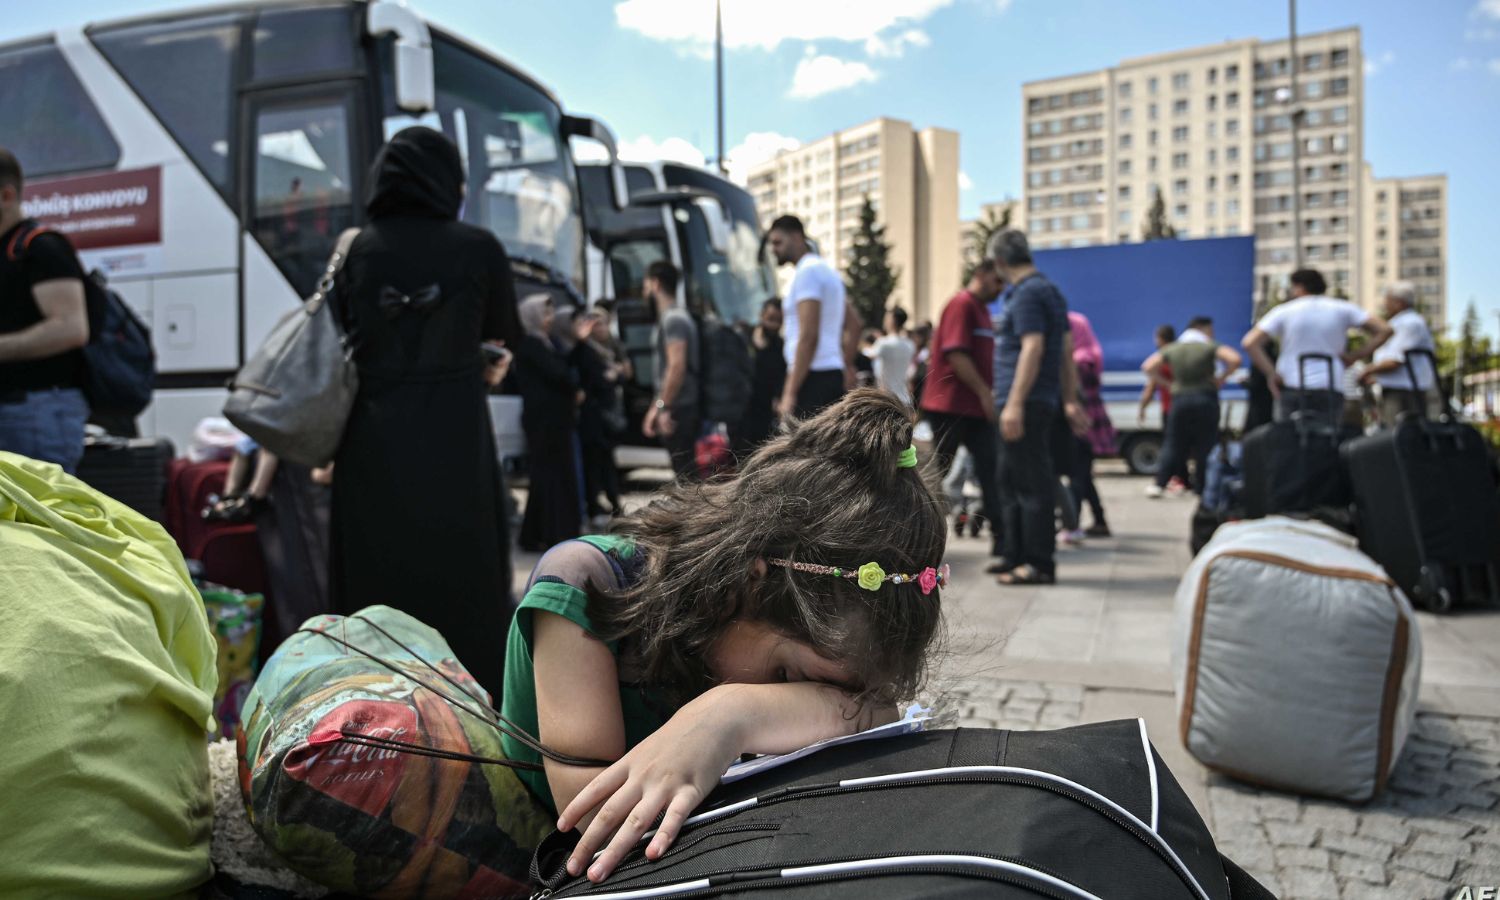 فتاة سورية تبكي بينما يستعد سوريون آخرون لركوب الحافلات في إسطنبول للعودة إلى سوريا - 19 من آب 2019 (AFP)